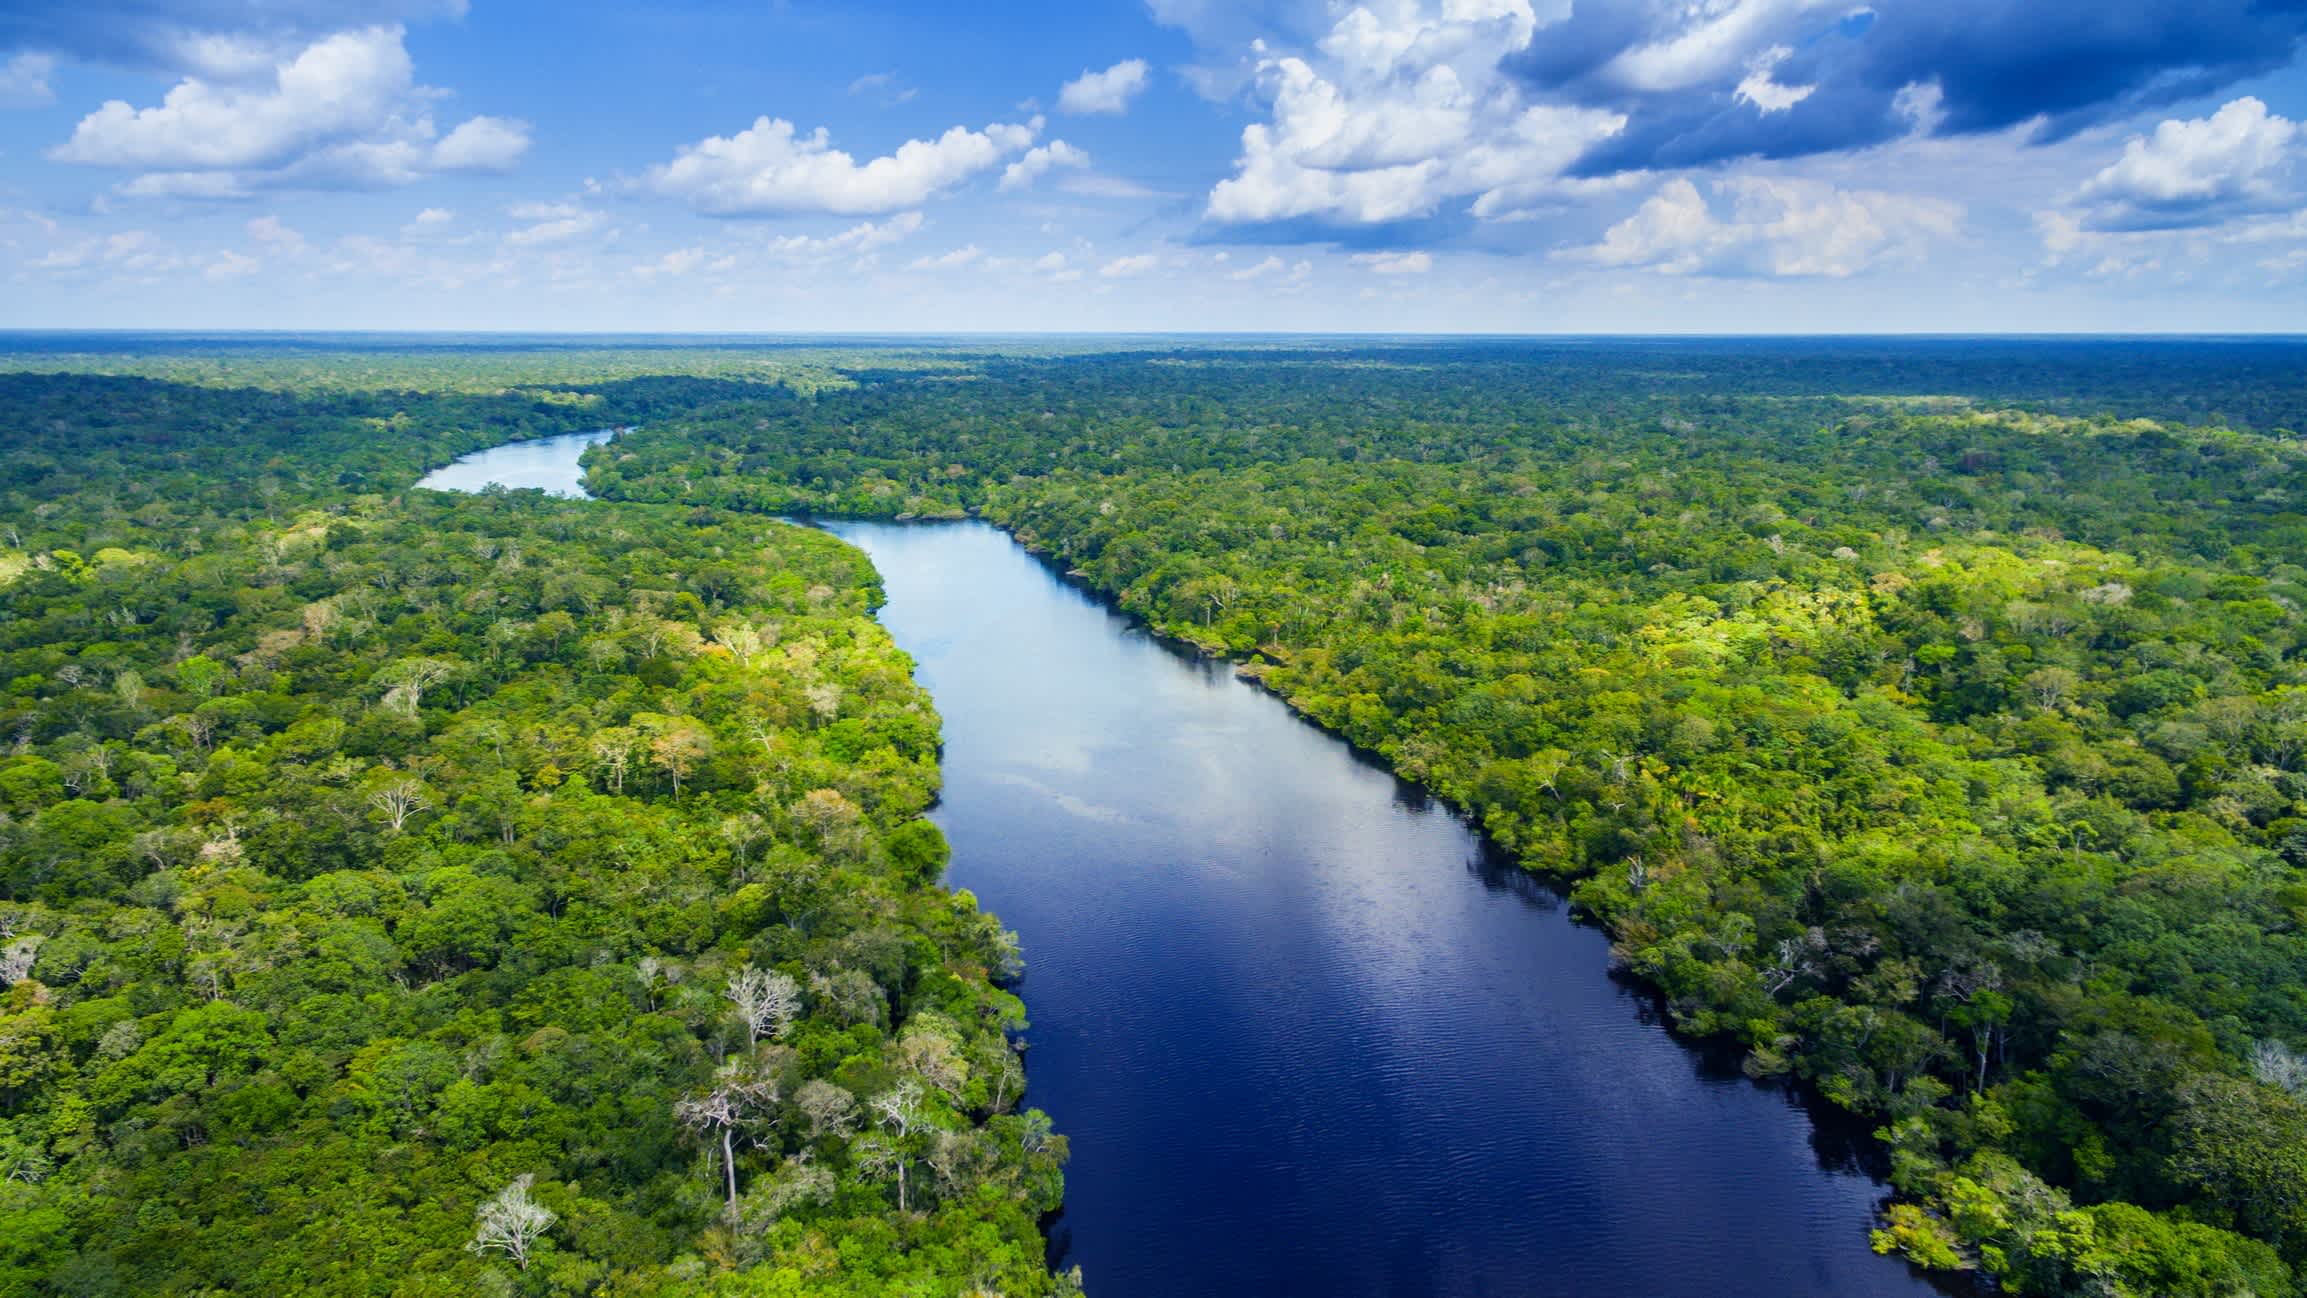 Vue aérienne du fleuve Amazone, bordé de végétation, en Équateur.